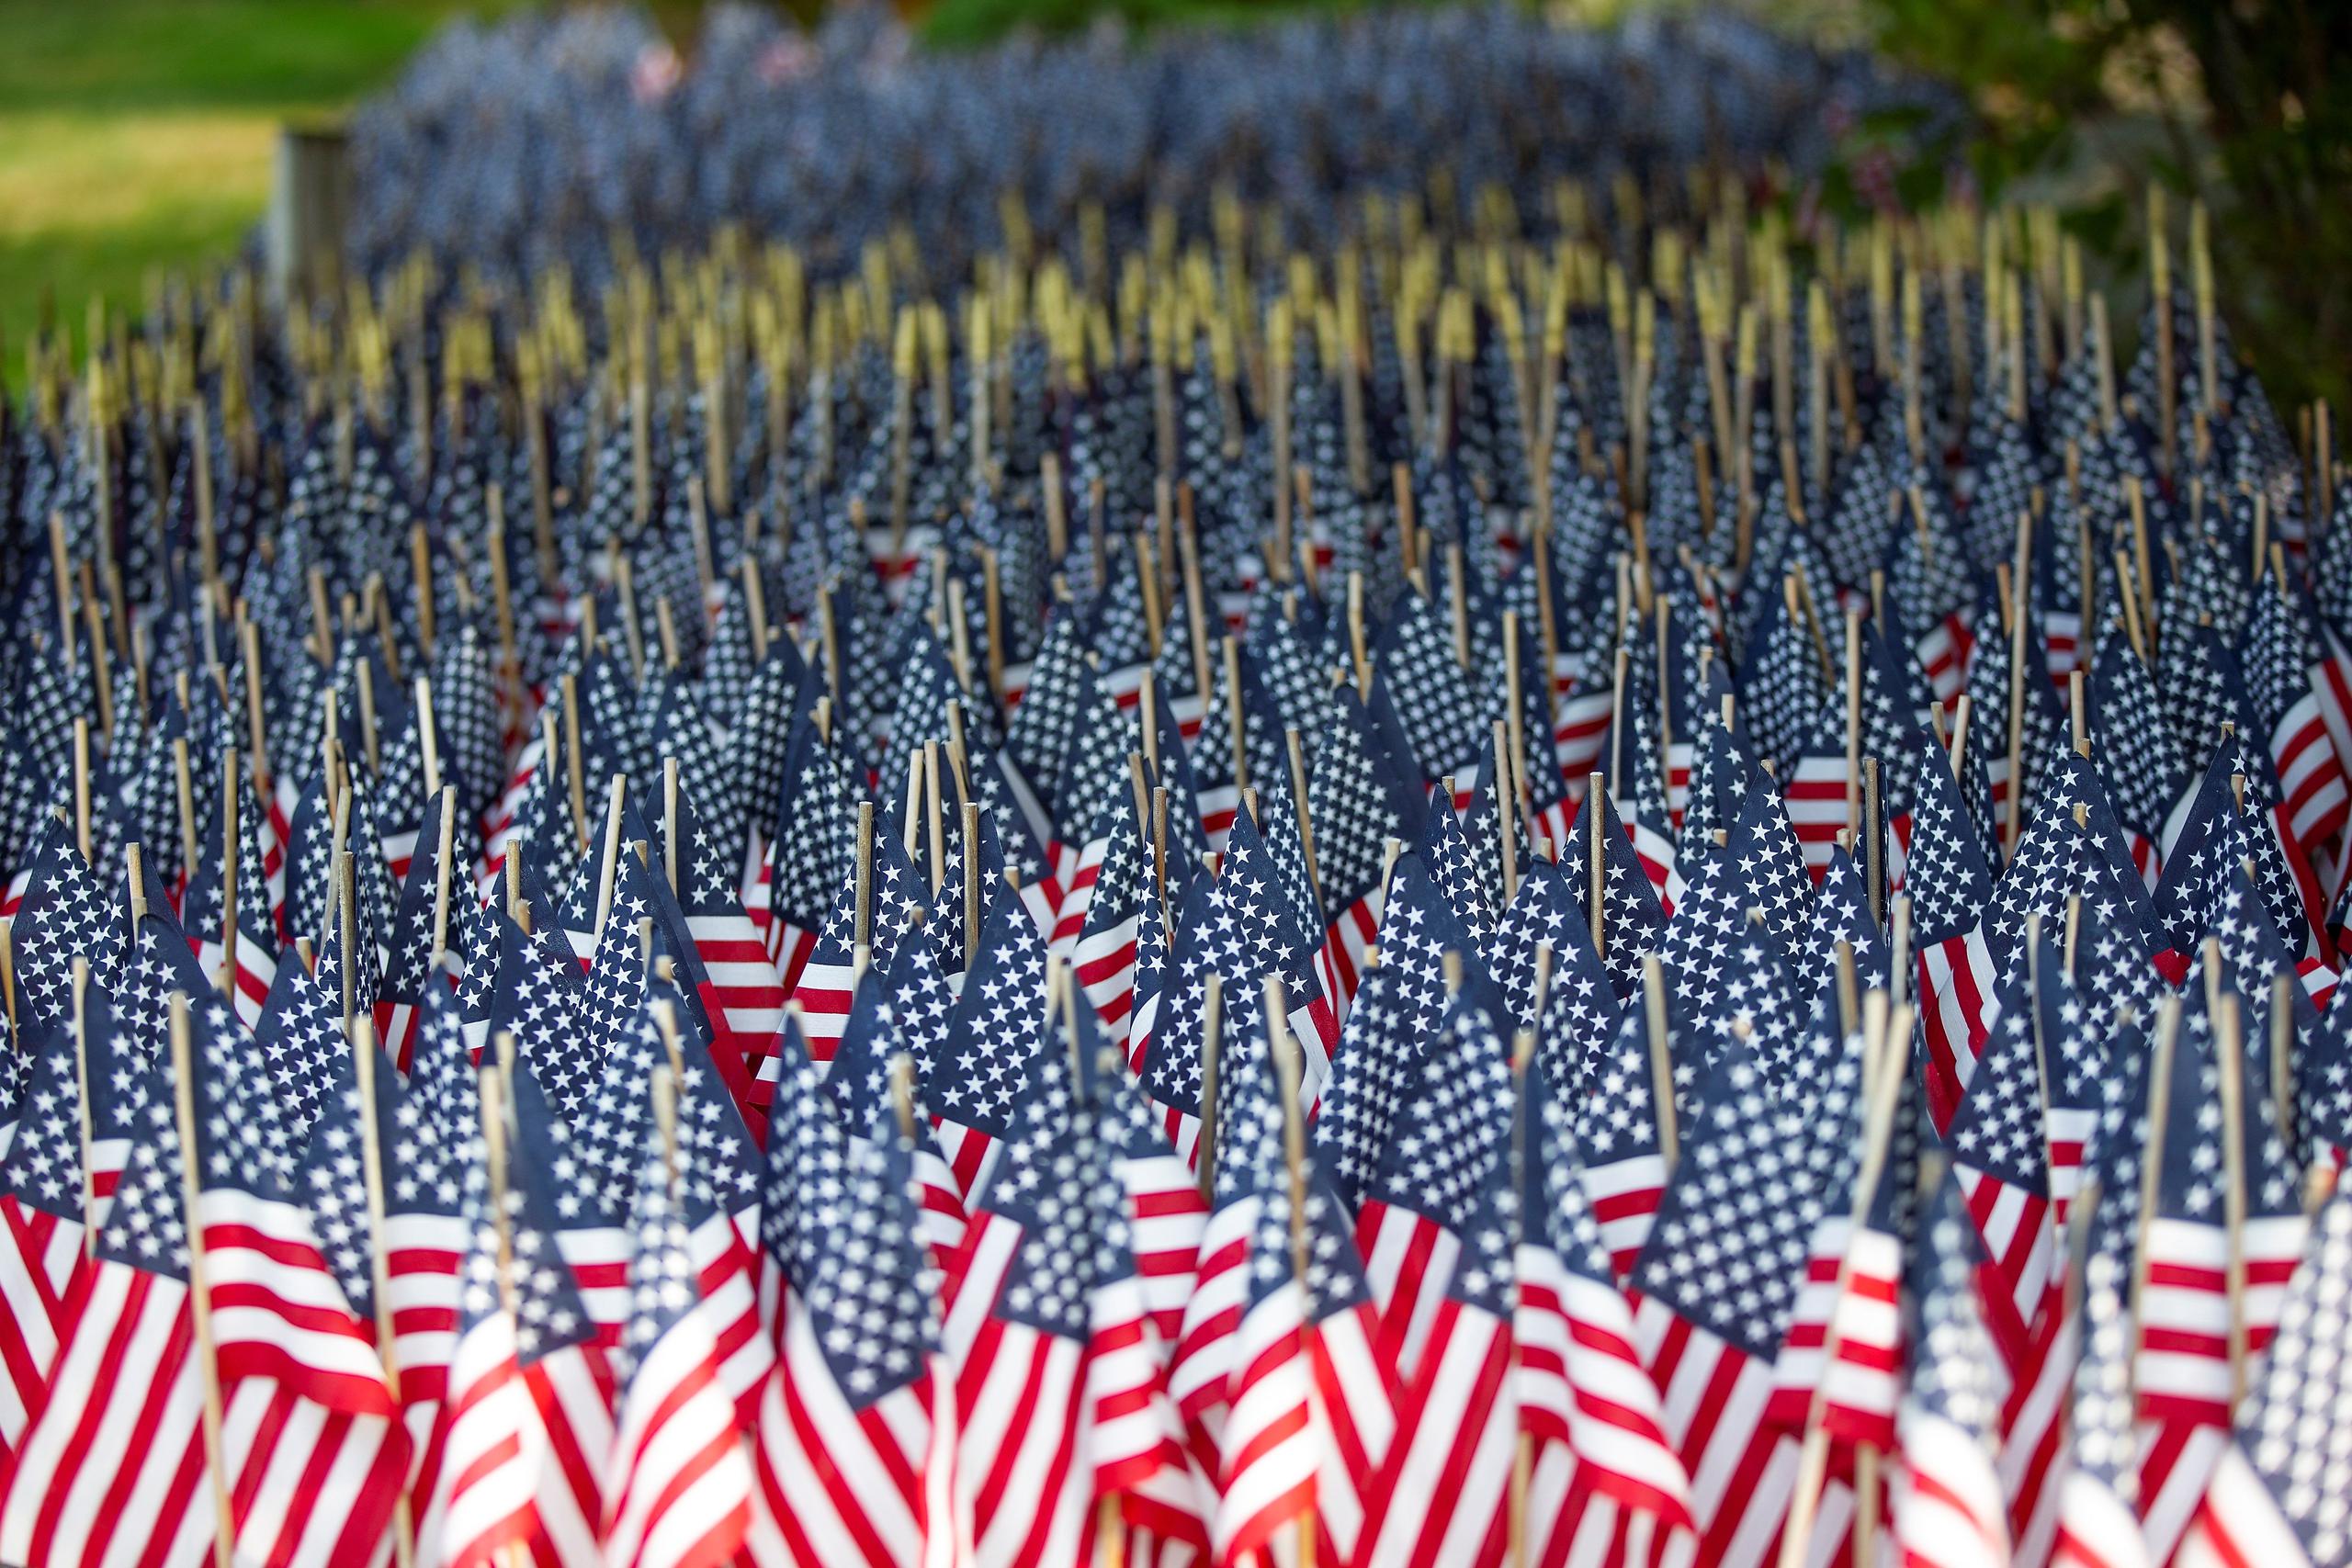 Más de 8,000 banderas, situadas en el patio de Mike Labbe en Grafton, rinden homenaje a las muertes de COVID-19 en Massachusetts.